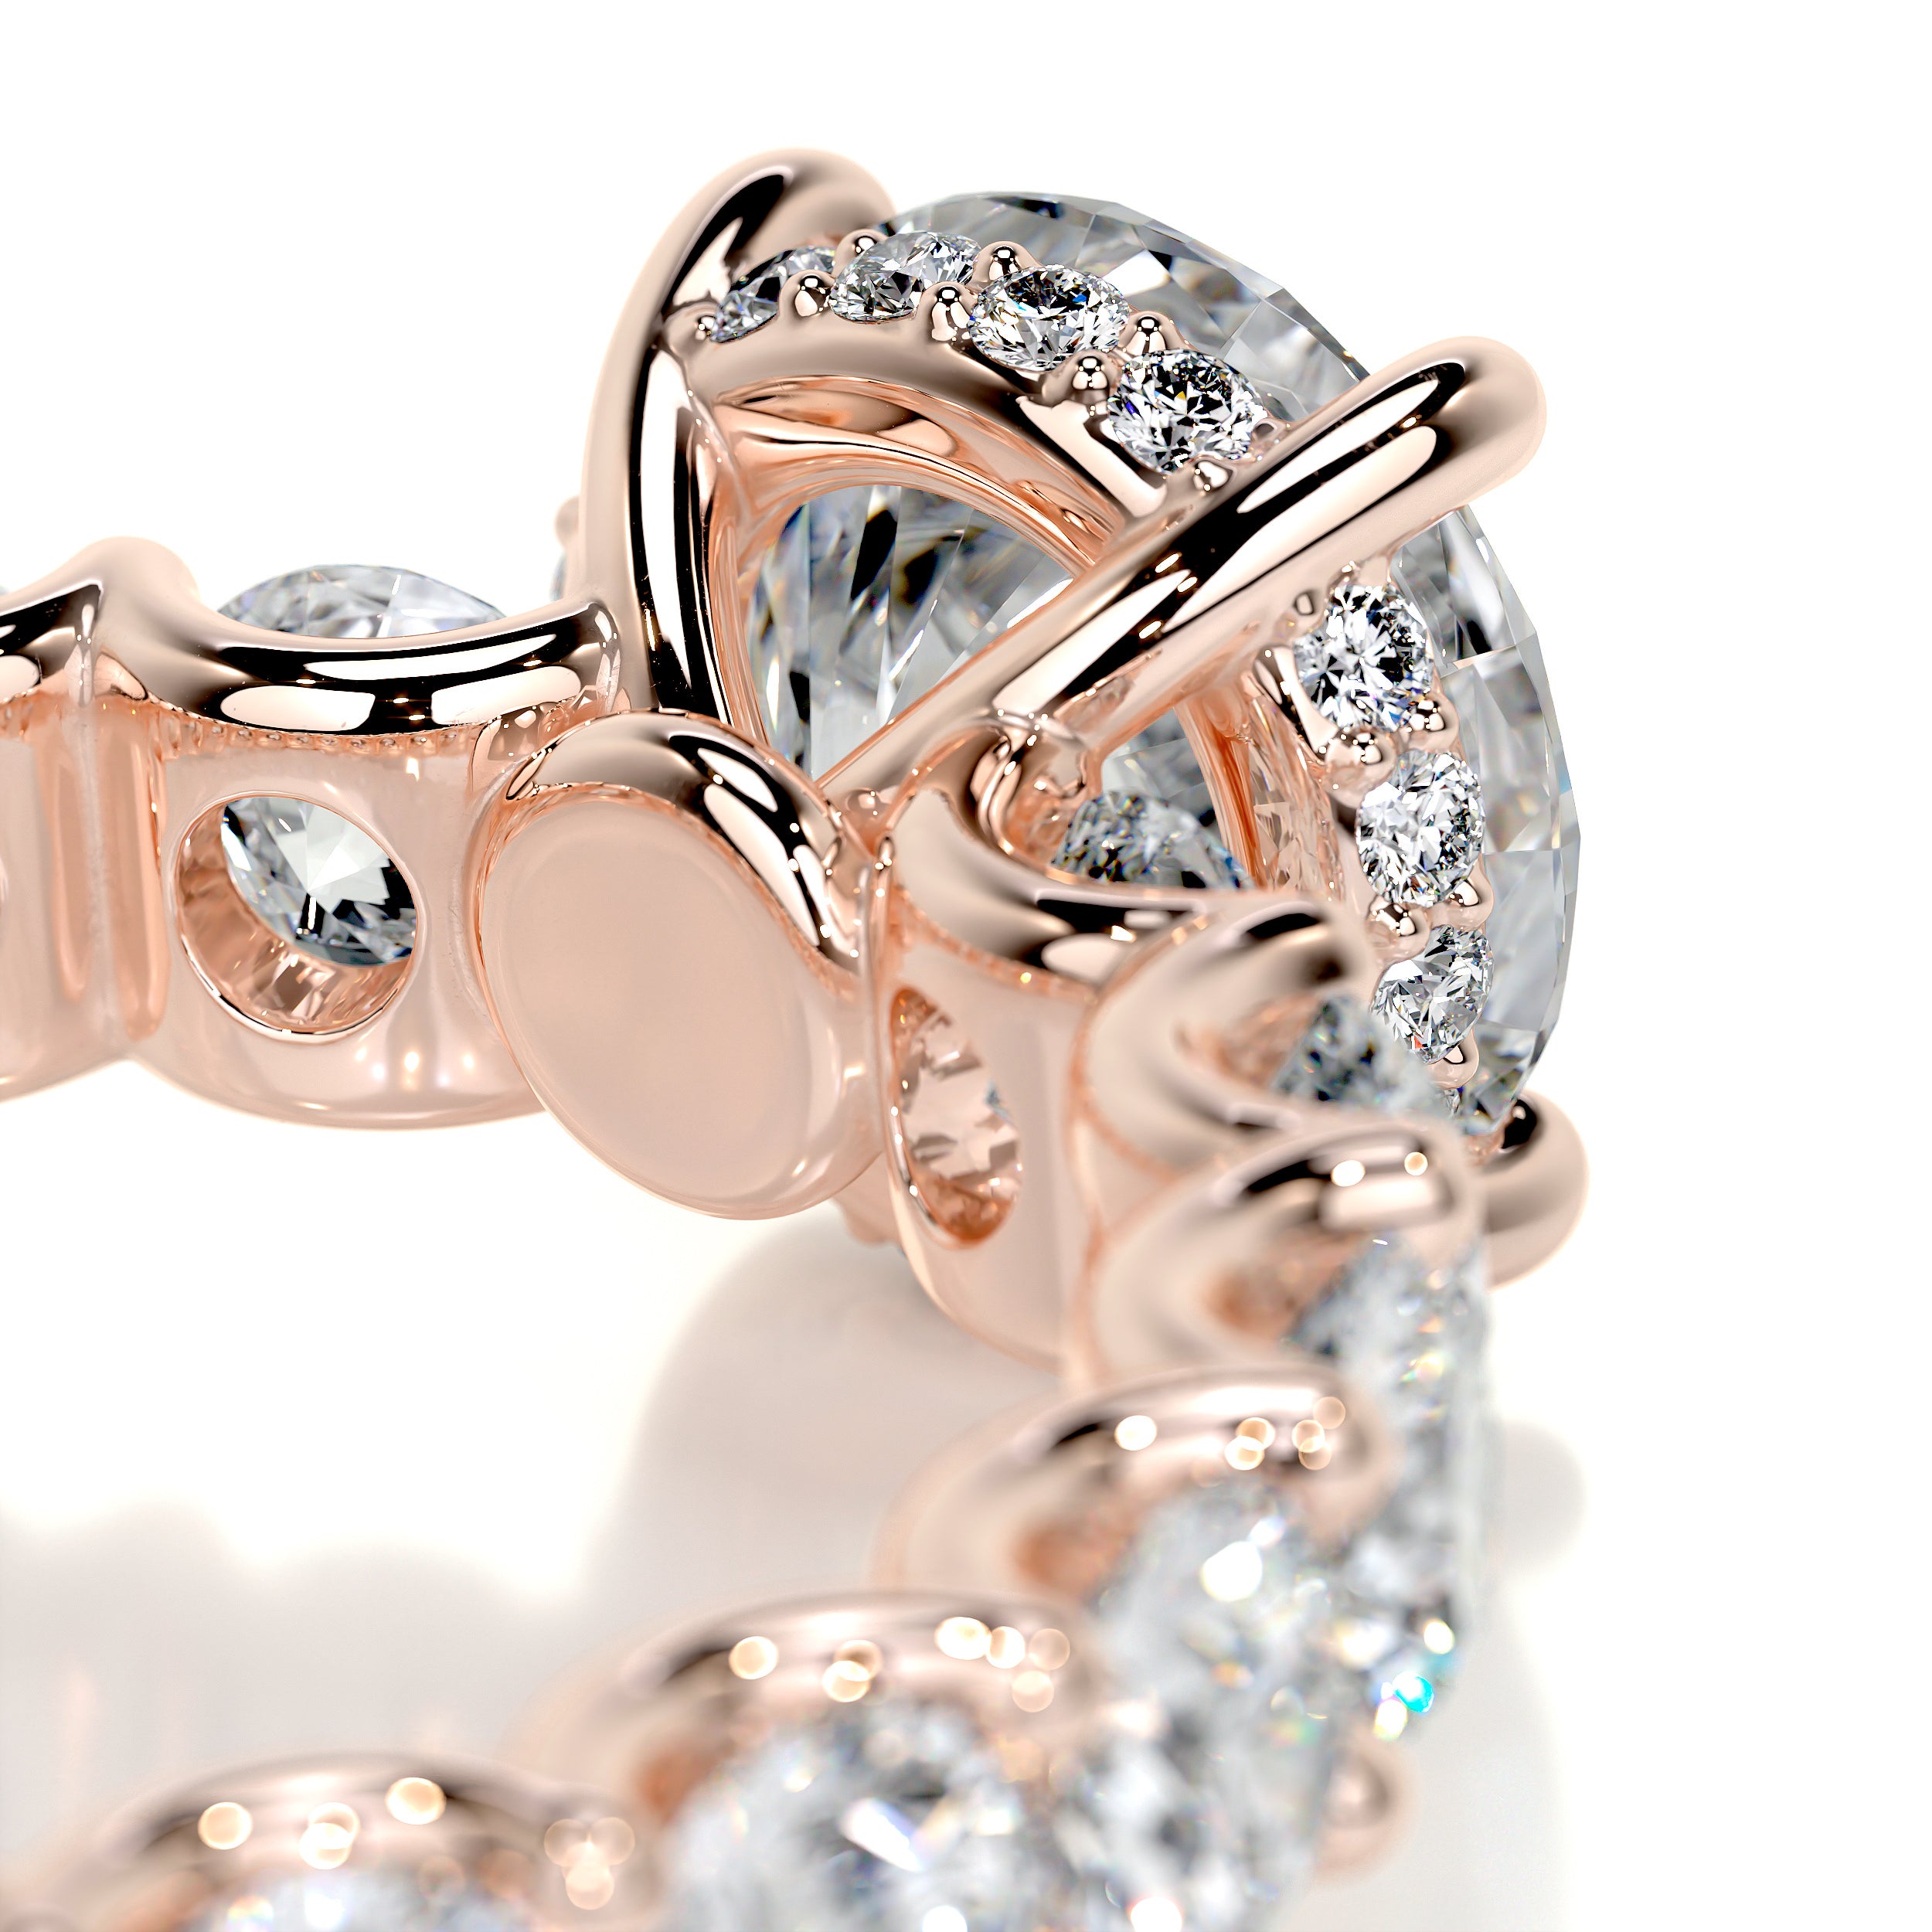 Lola Diamond Engagement Ring   (3.25 Carat) -14K Rose Gold